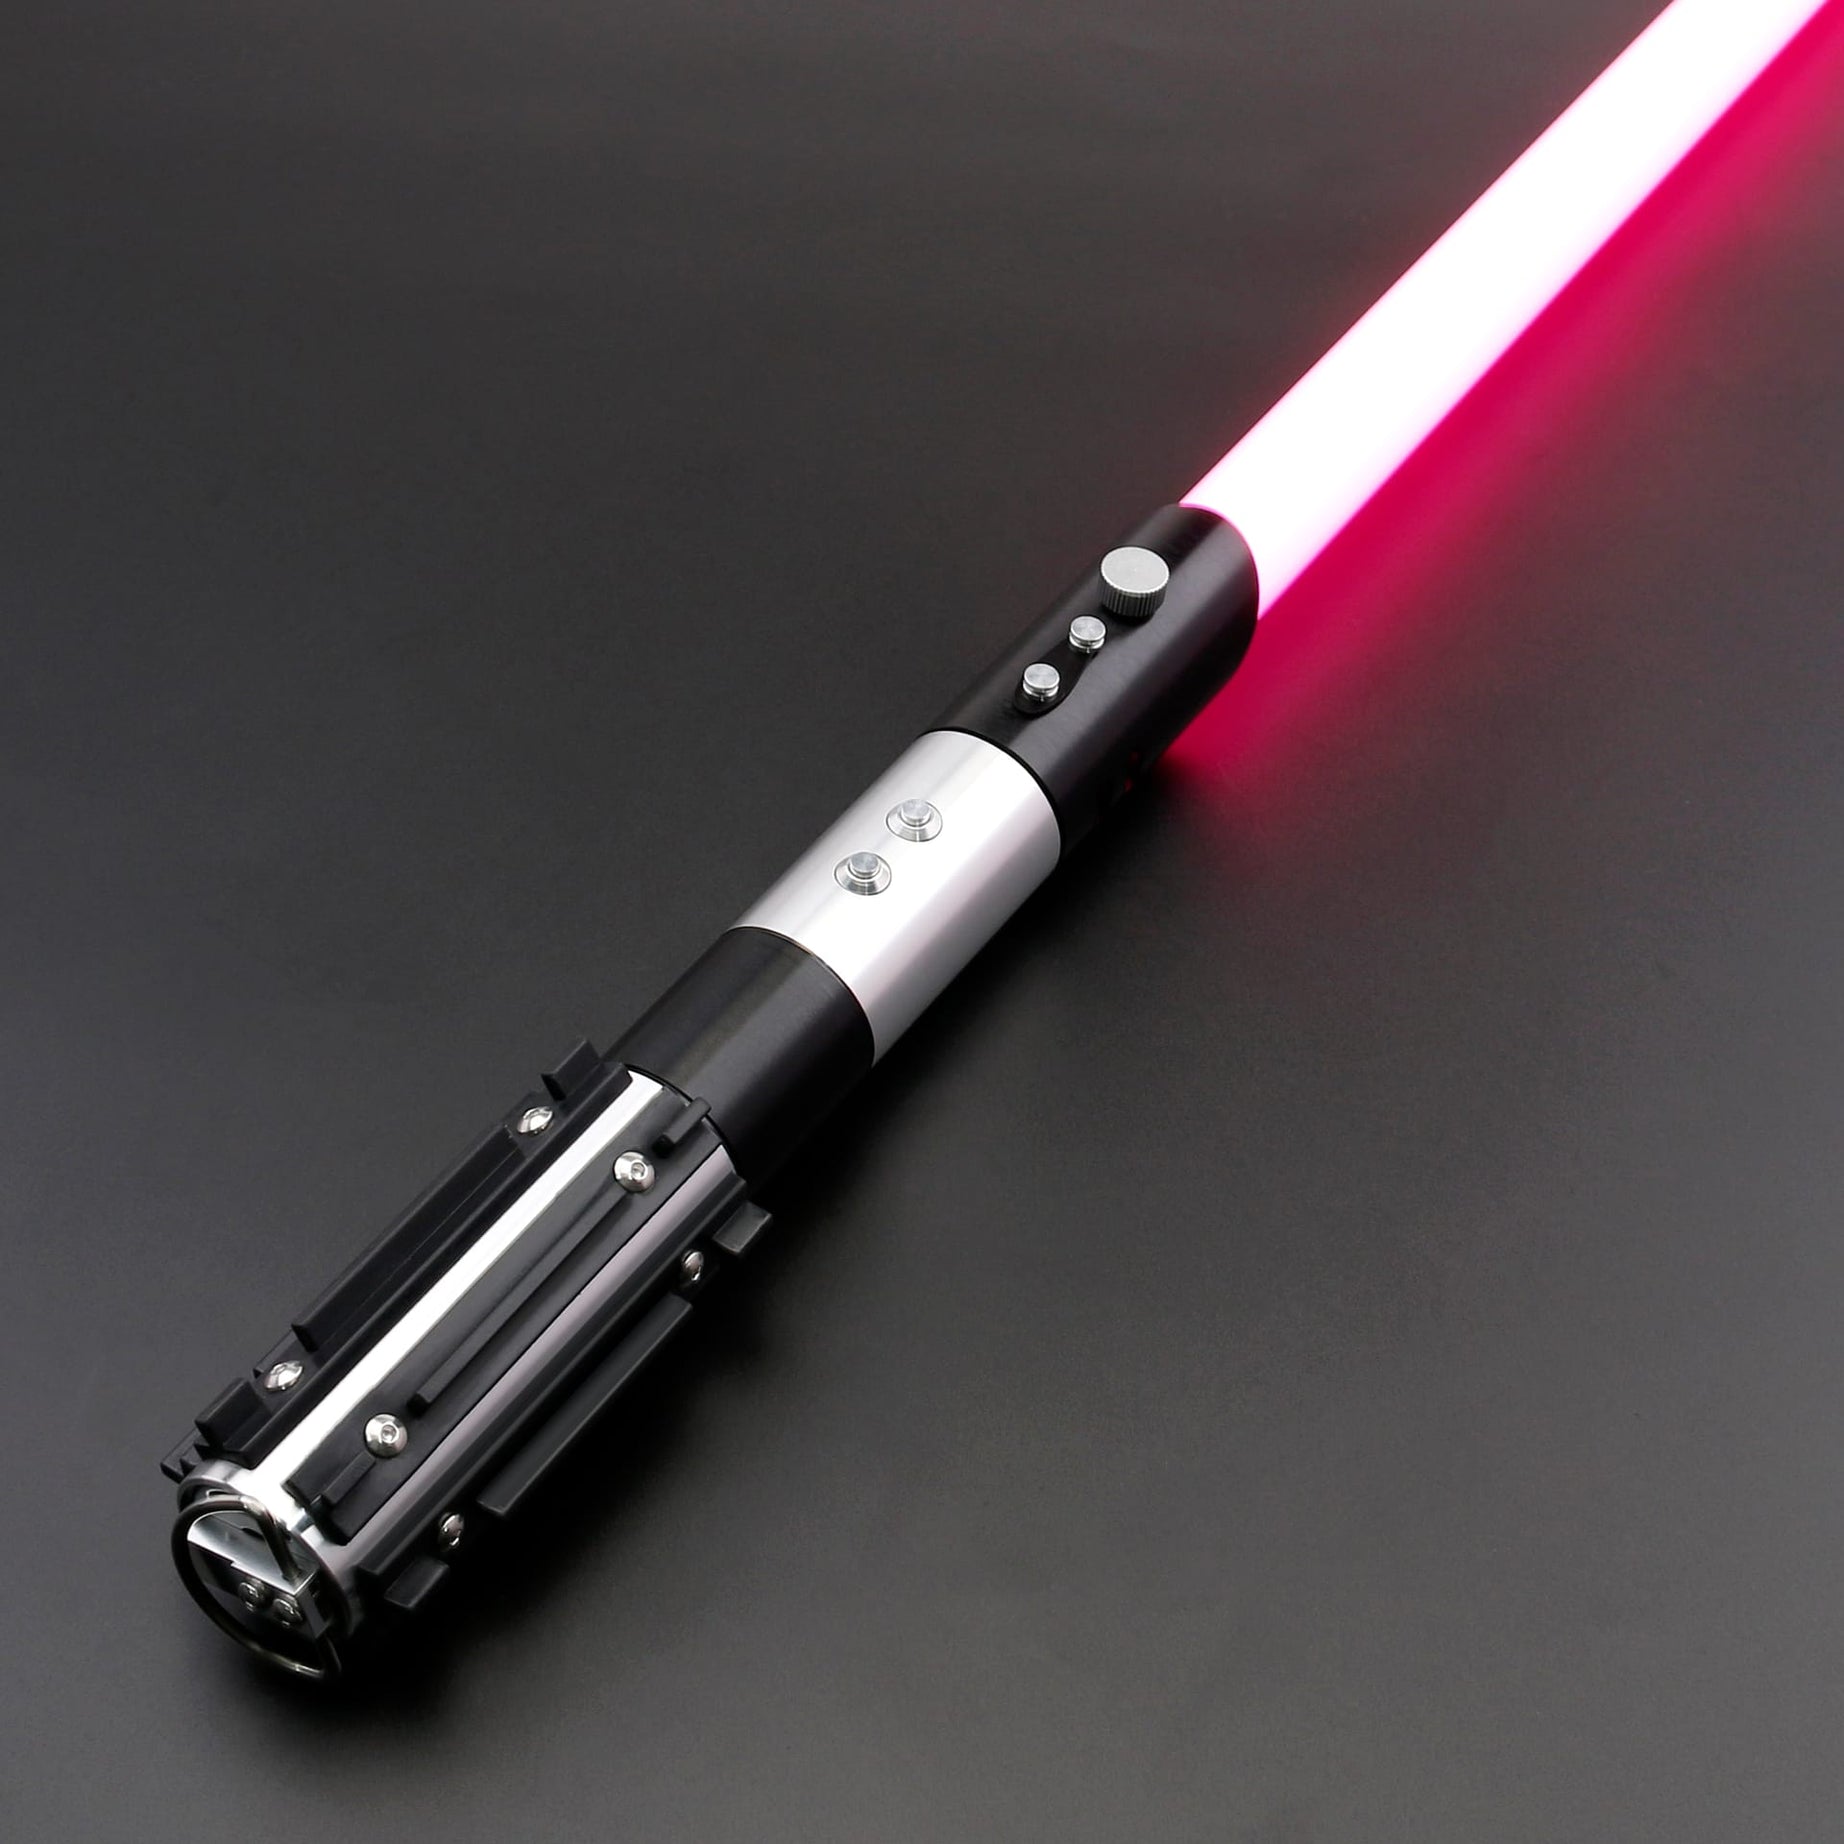 Construir Sable laser de Star Wars de LED - DIY 